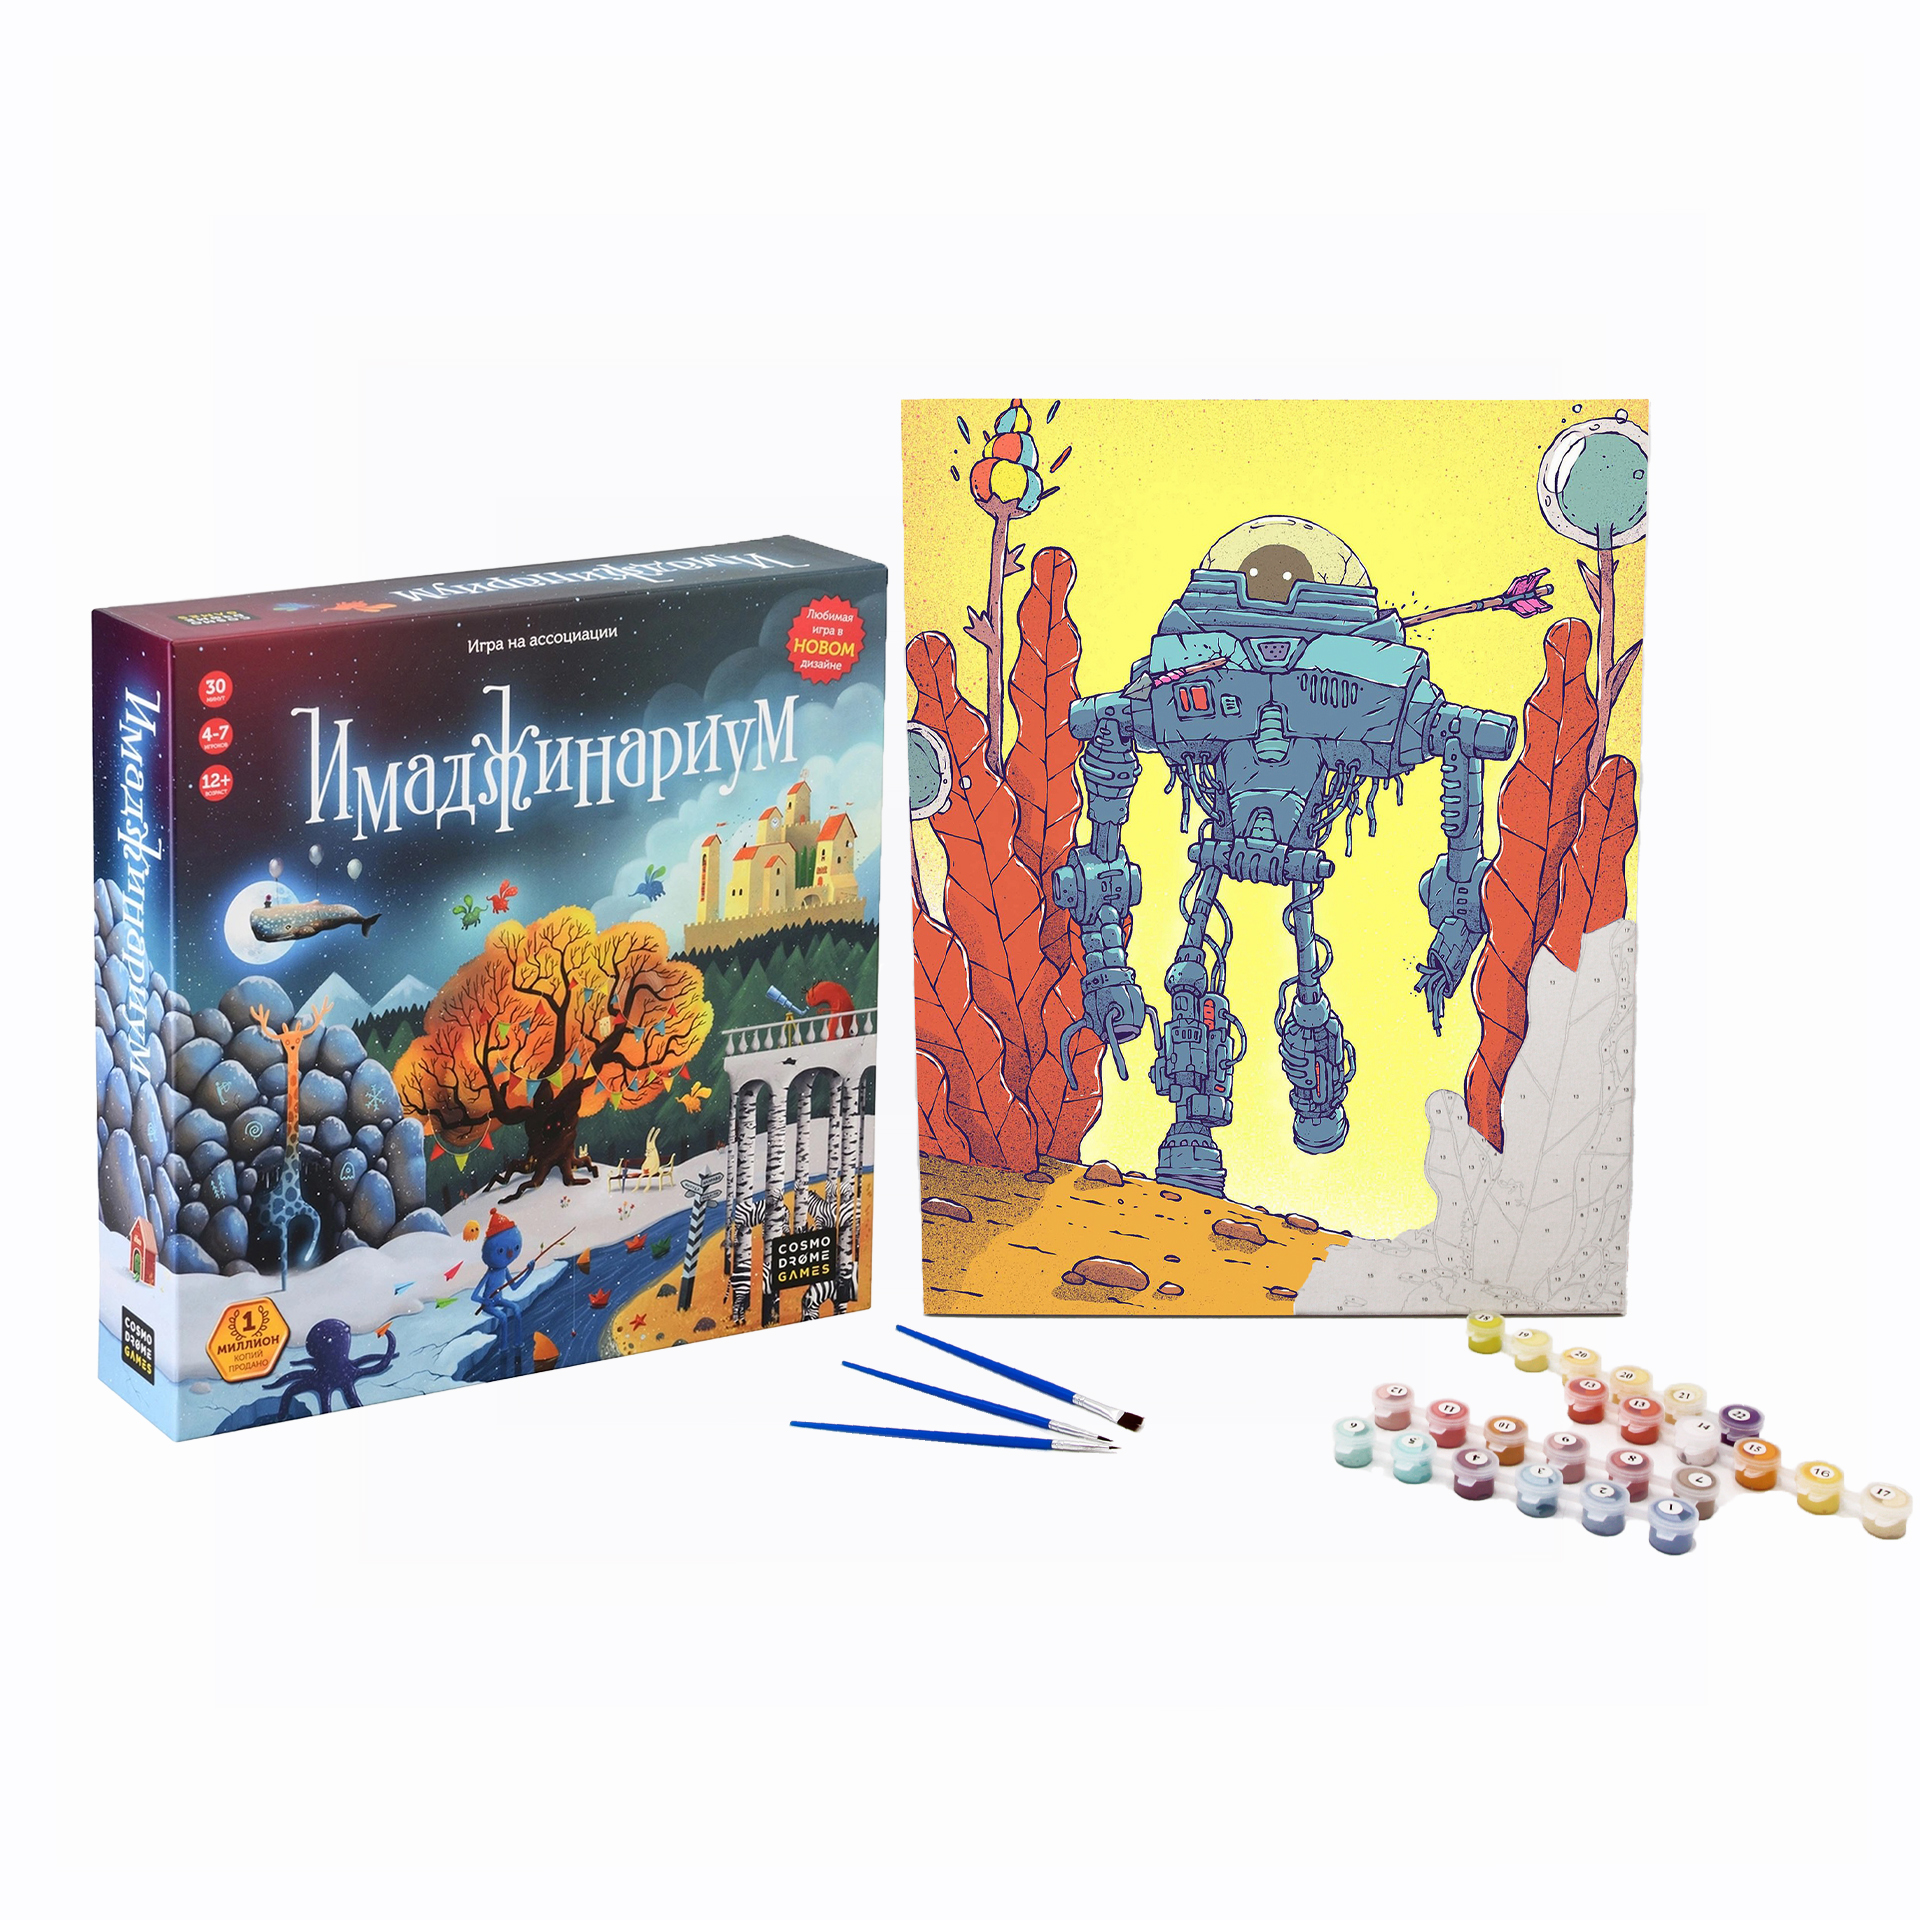 Набор Cosmodrome Games Настольная игра Имаджинариум и Картина по номерам, Марсианин